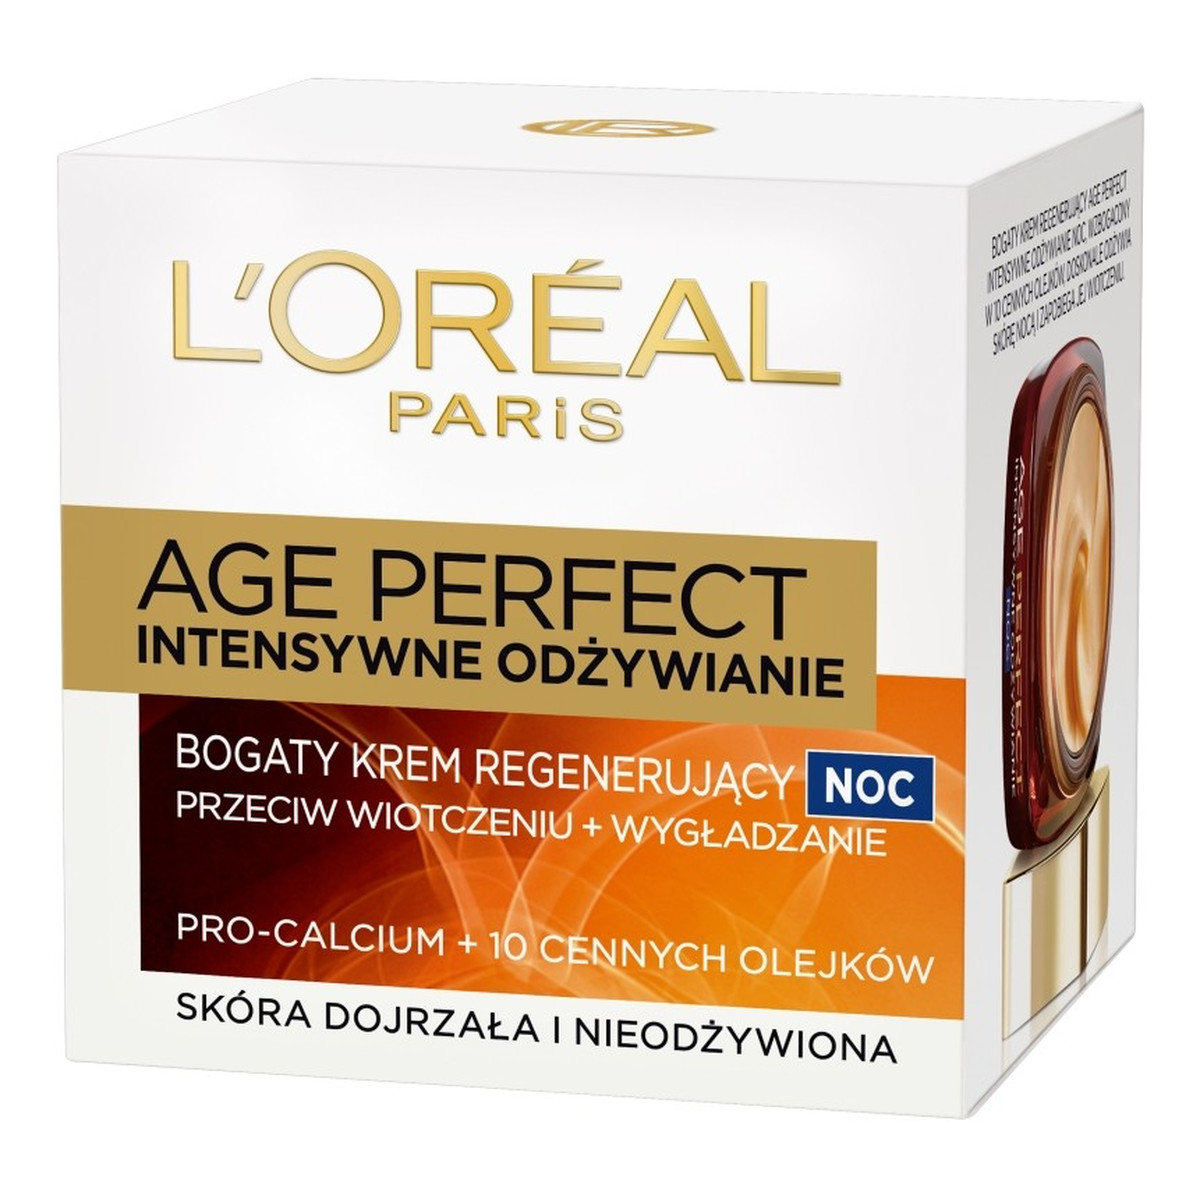 L'Oreal Paris Intensywne Odżywianie Age Perfect Krem Regenerujący Na Noc 50ml